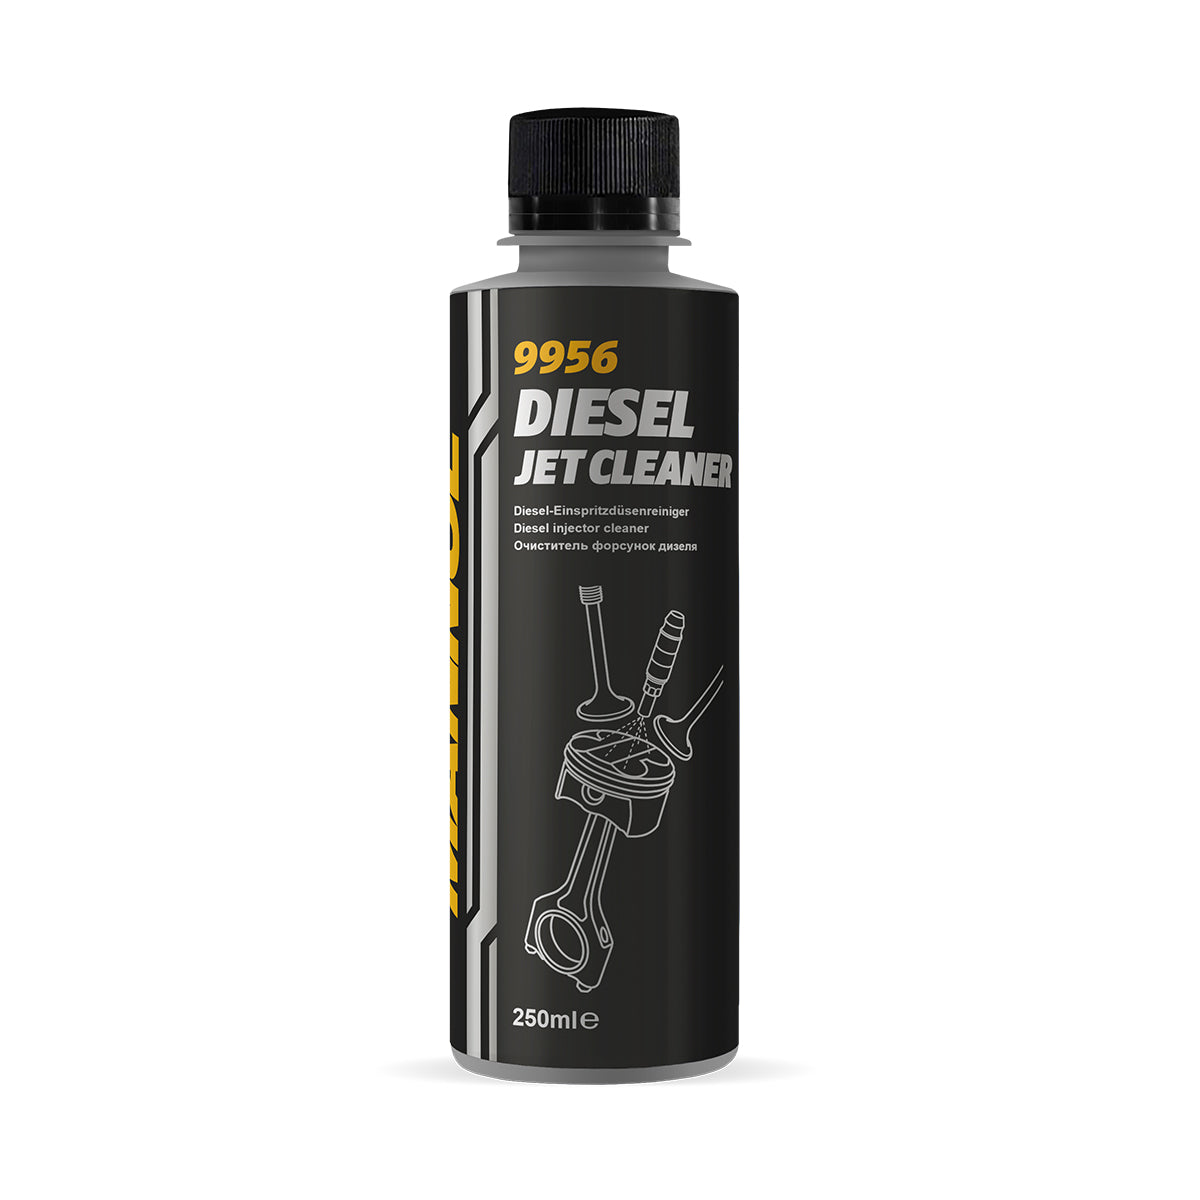 MANNOL 9956 Diesel Jet Cleaner Einspritzdüsenreiniger, Kraftstoffsystem, Additive / Zusätze, Schmierstoffe